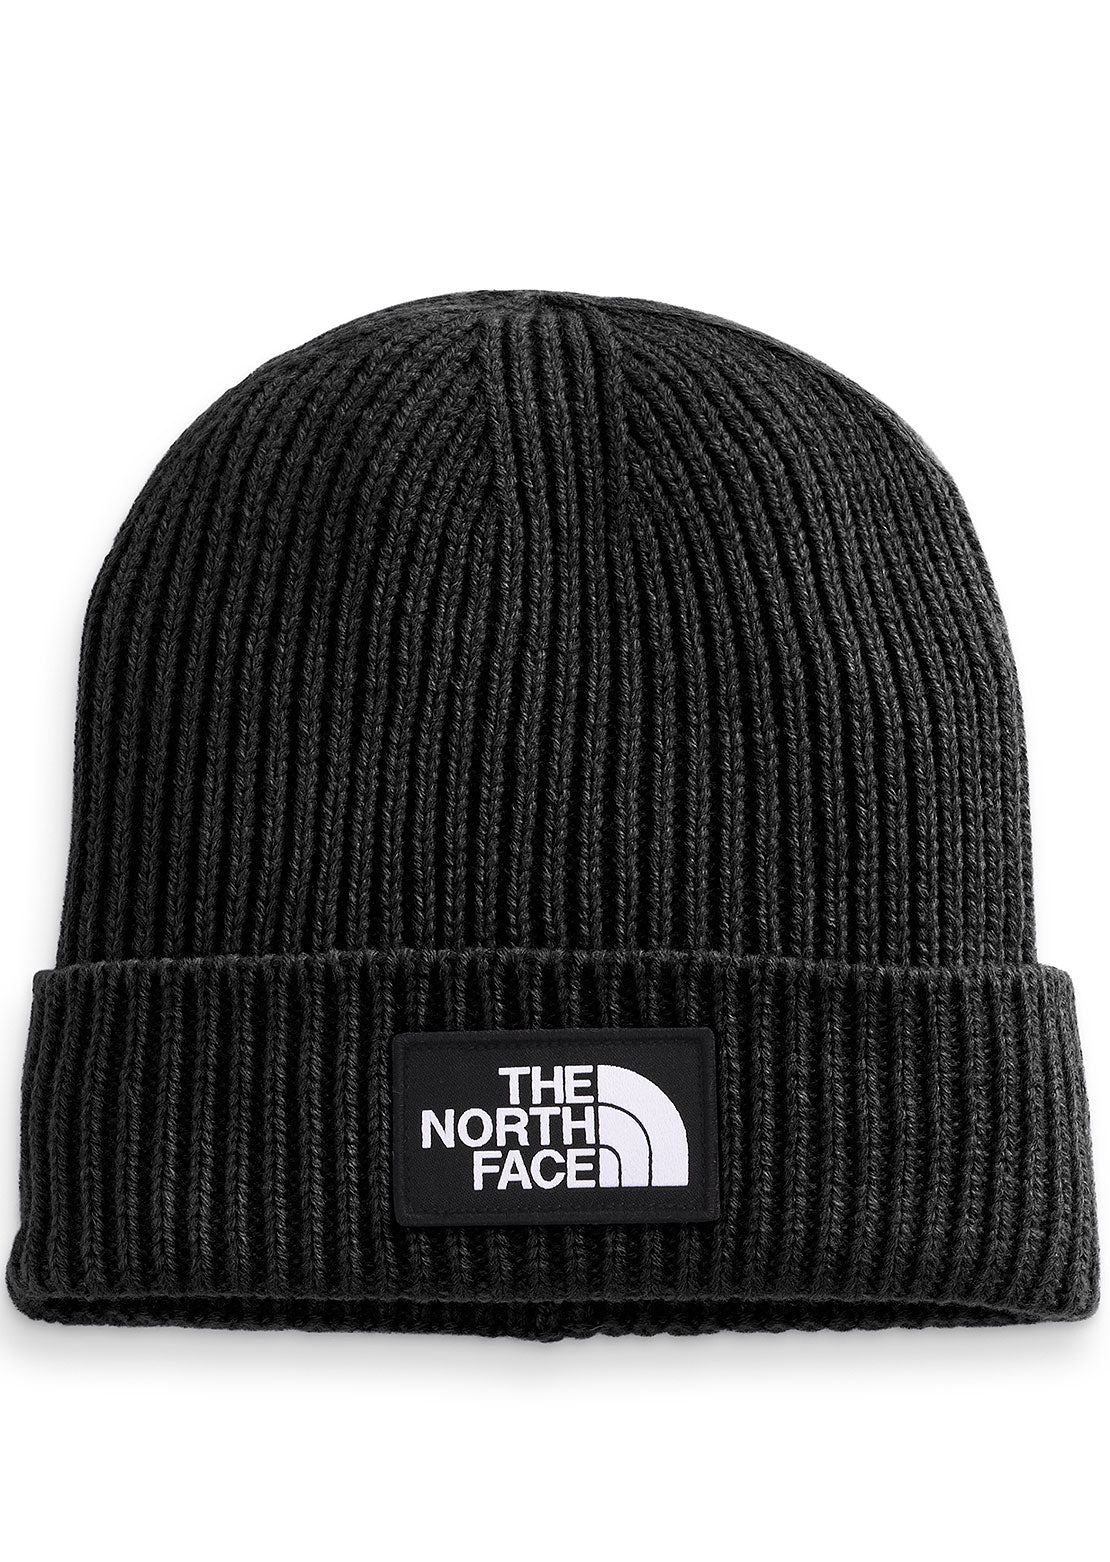 The North Face Logo Box Cuffed Beanie black